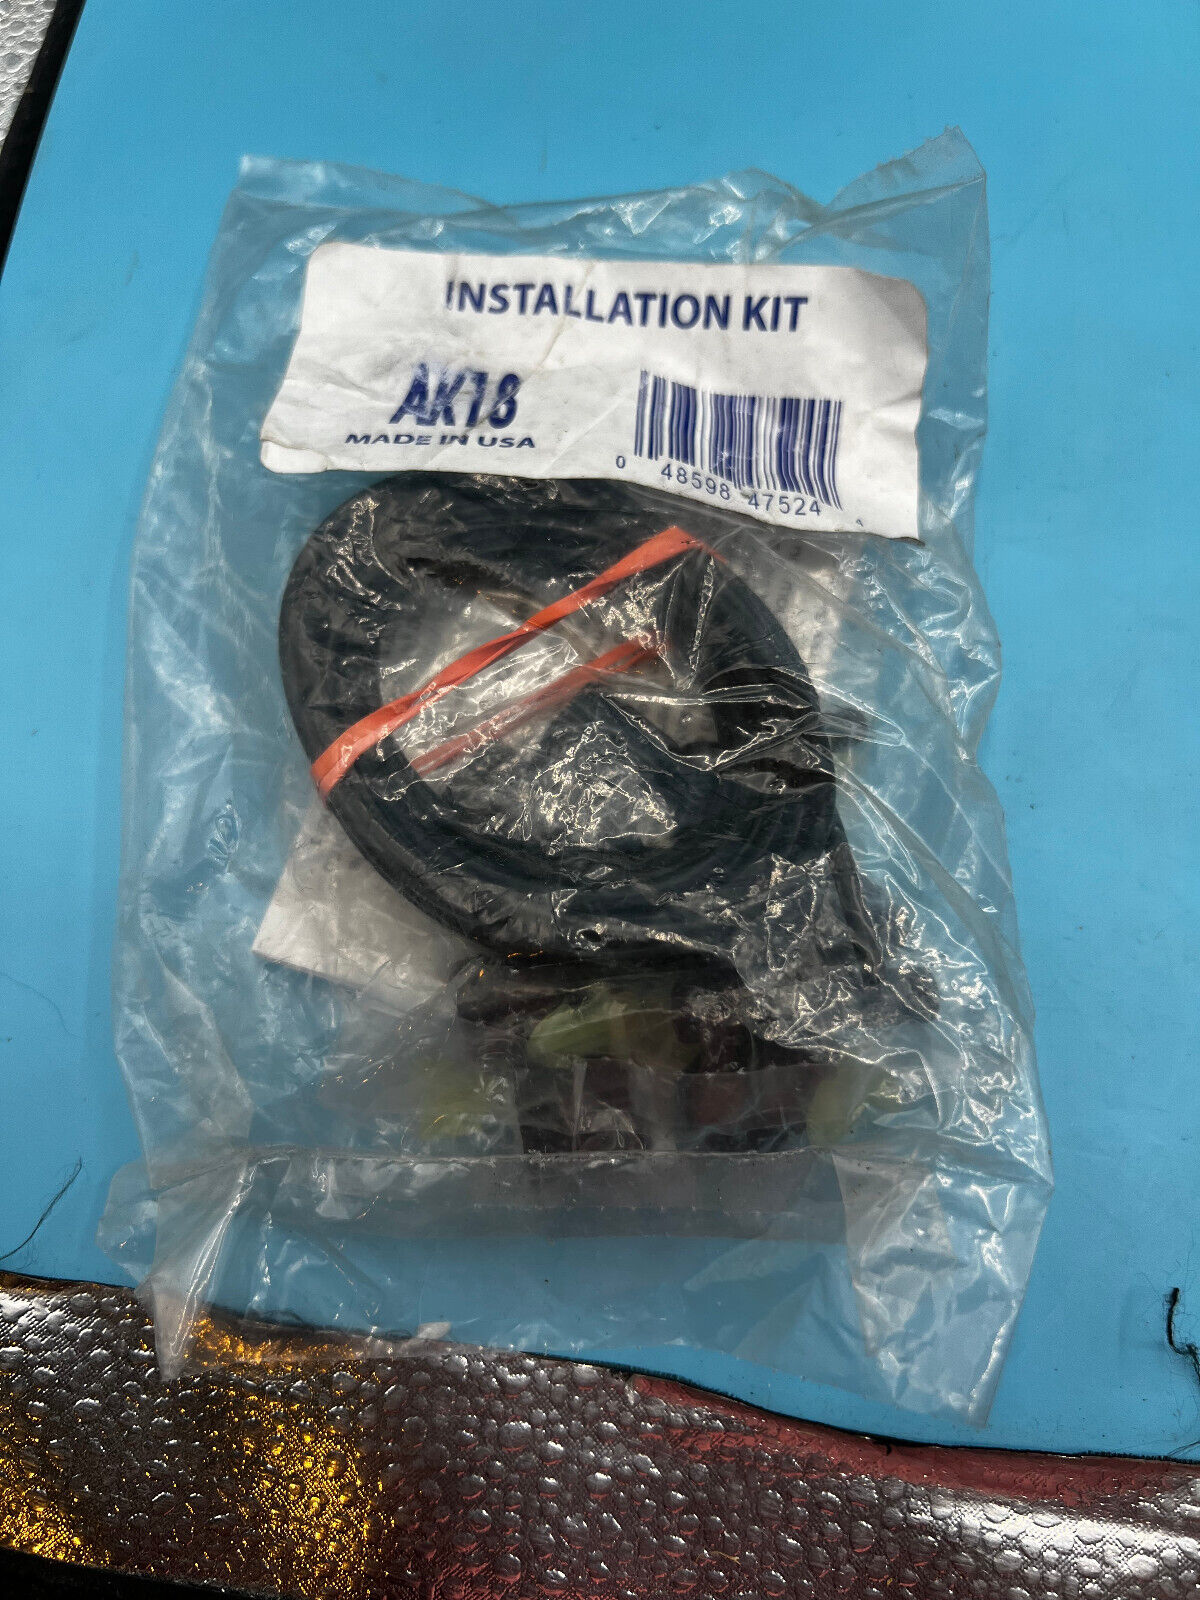 Monroe AK18 Air shock installation kit